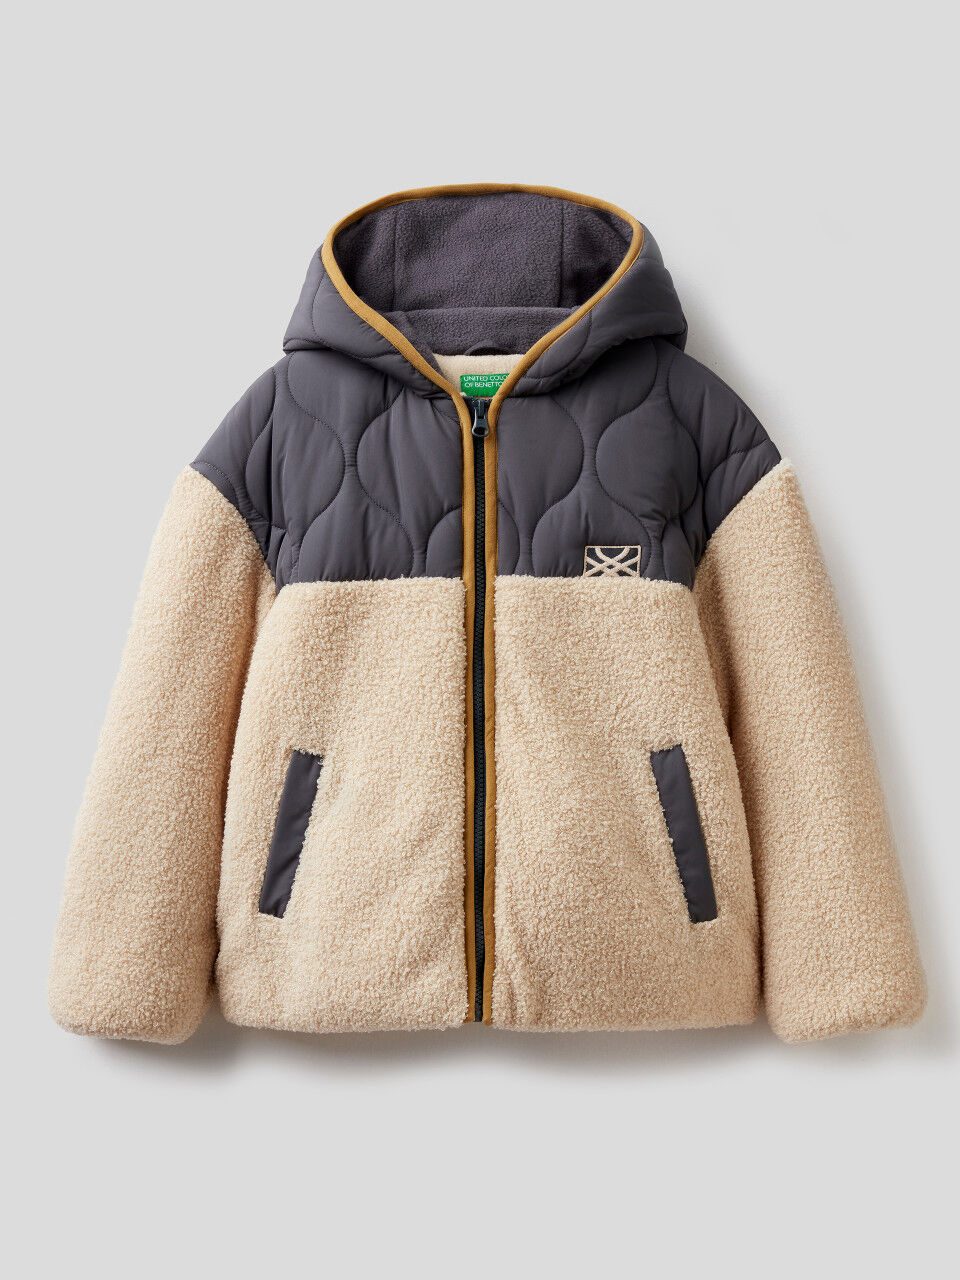 Oversized jacket in fleece and nylon